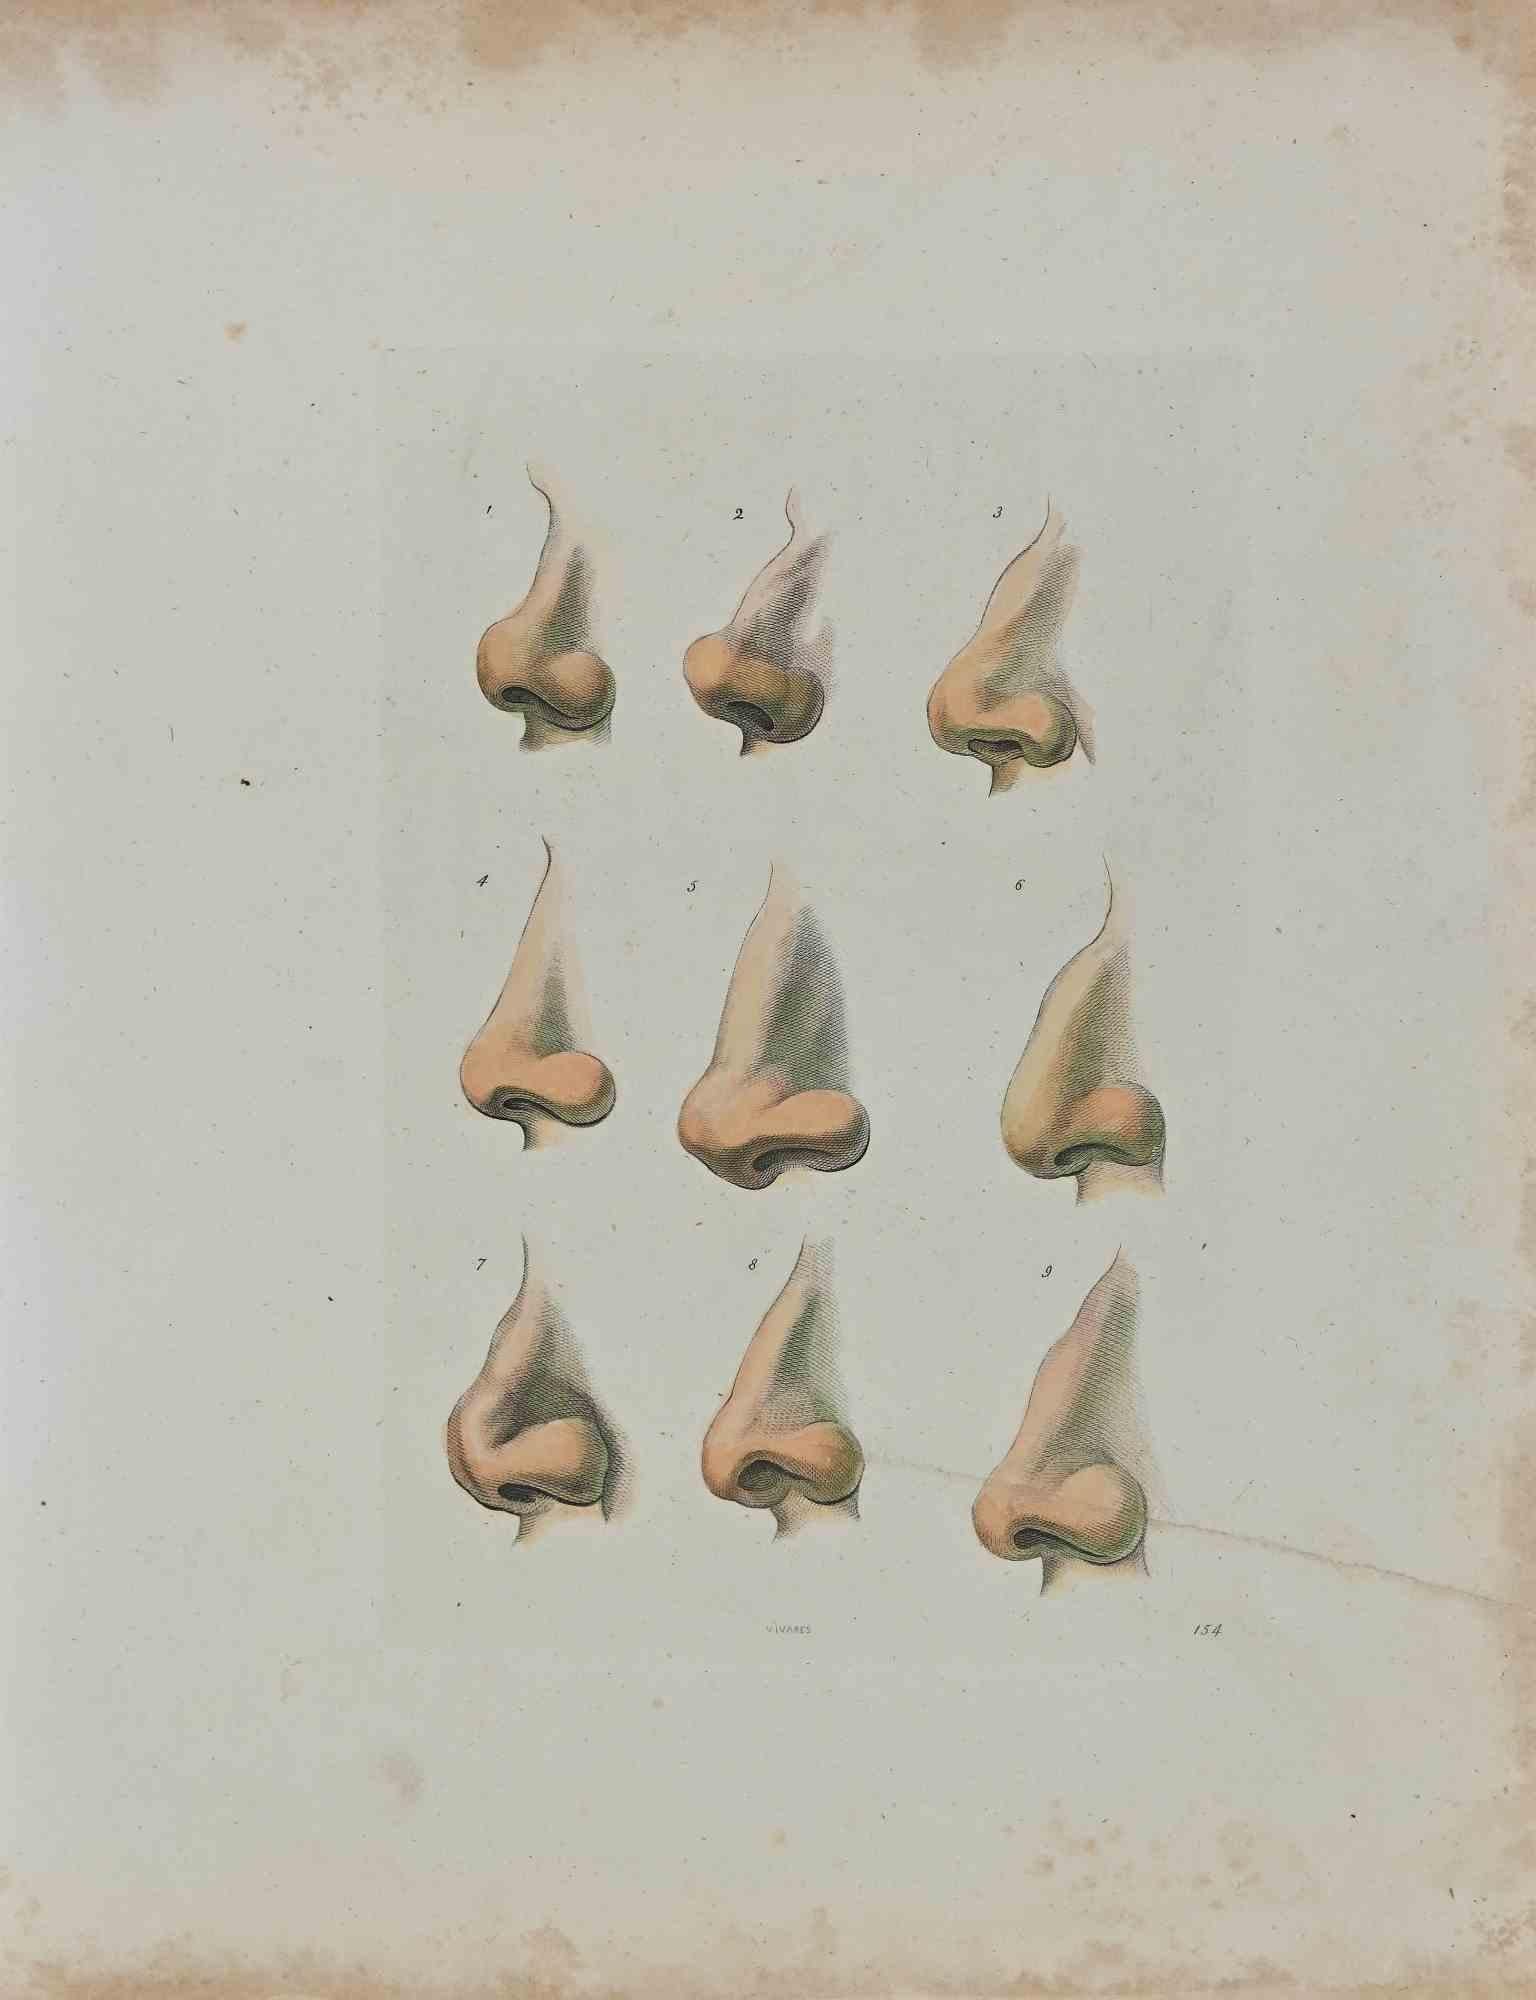 Thomas Holloway, Noses, Originalradierung, 1810. Die Physiognomy - The Noses ist ein Originalradierungskunstwerk, geschaffen von Thomas Holloway für Johann Caspar Lavaters "Essays on Physiognomy, Designed to Promote the Knowledge and the Love of